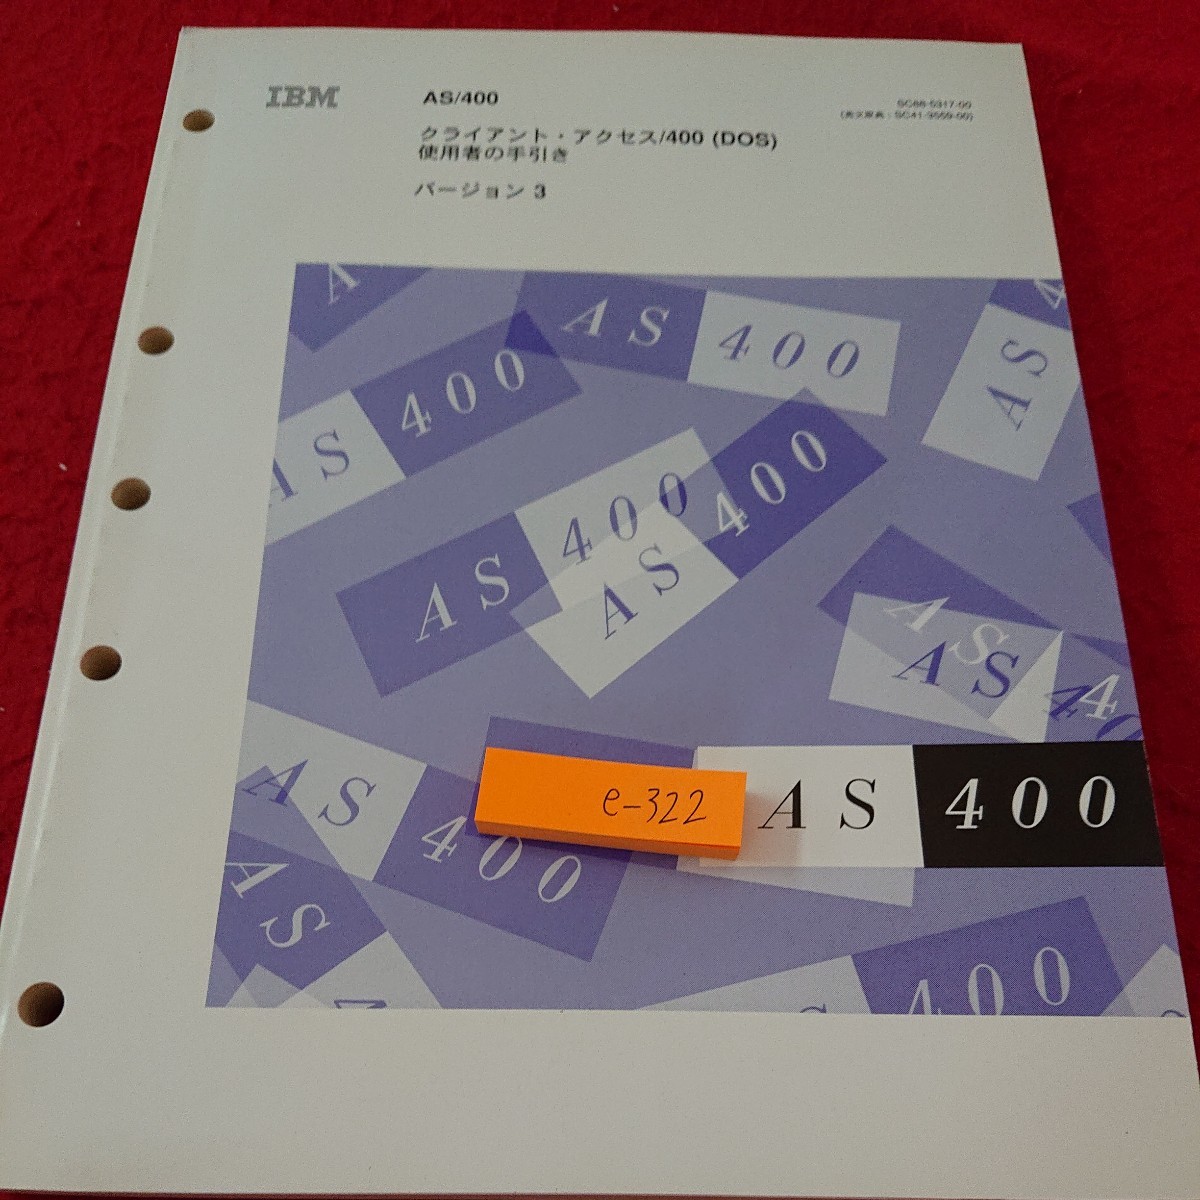 e-322 クライアント・アクセス/400(DOS) 使用者の手引き バージョン3 日本IBM 発行日不明※6 _傷、汚れあり